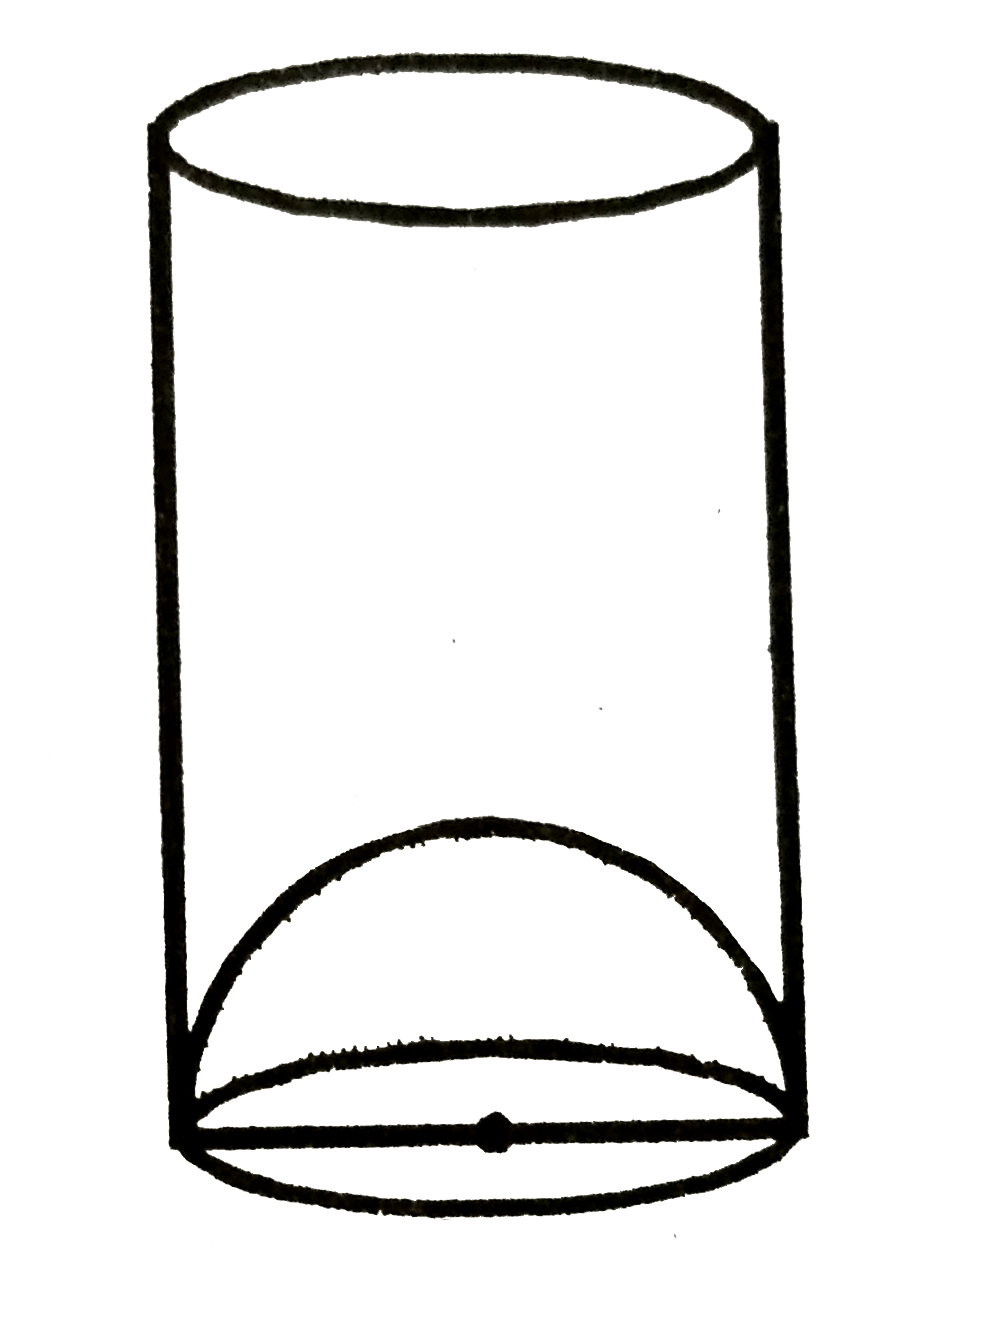 एक गिलास का 7 cm आतंरिक व्यास है इसके निचले आधार के एक उभरा हुआ अर्धगोला है जैसा की चित्र में दर्शाया गया है यदि गिलास की उचाई 16cm हो तो गिलास की आभासी धारिता और वास्तविक धारिता ज्ञात करे। [pi=(22)/(7)